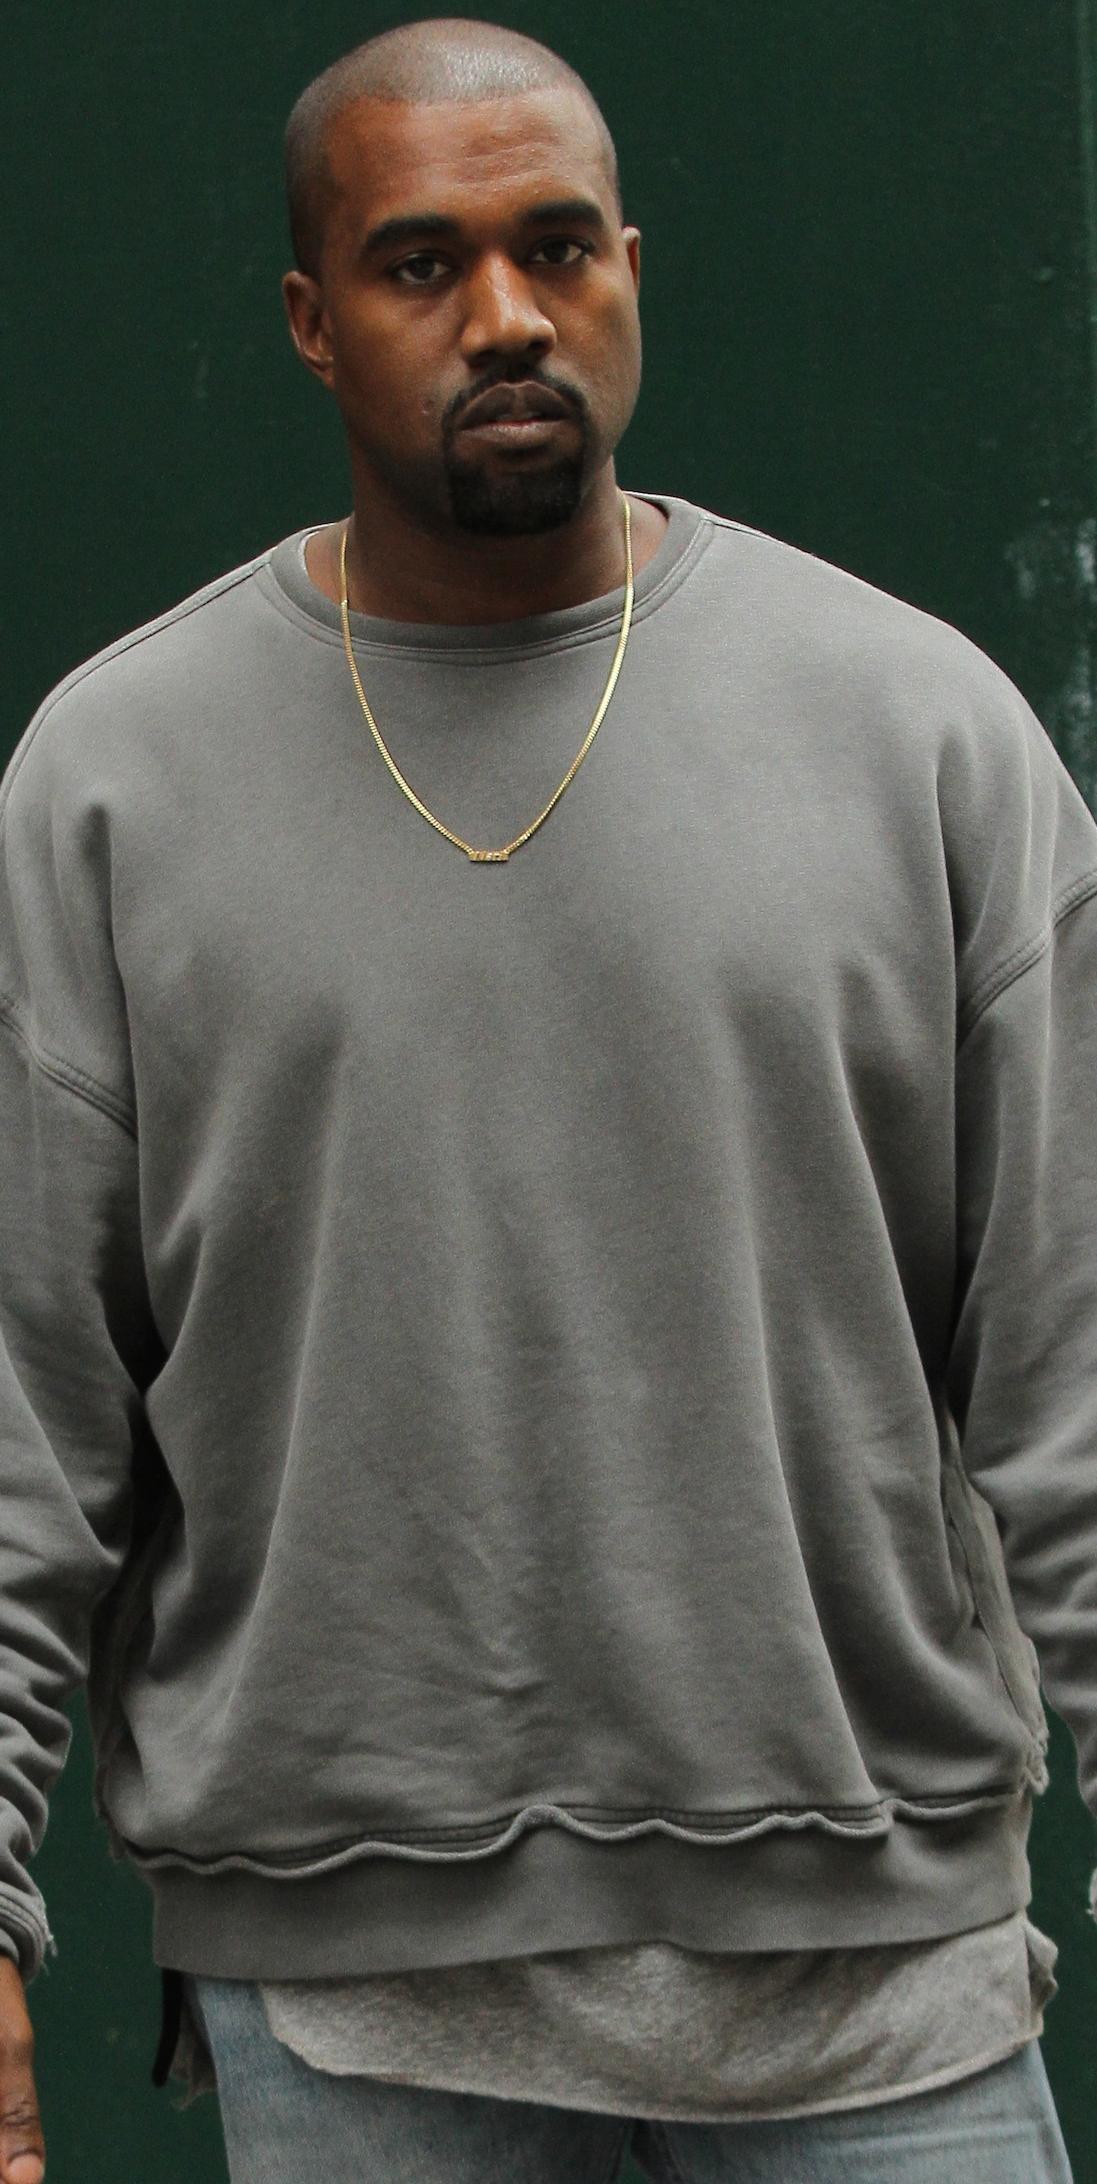 Kanye West: Snakeskin Backpack in NYC: Photo 2596229, Kanye West Photos